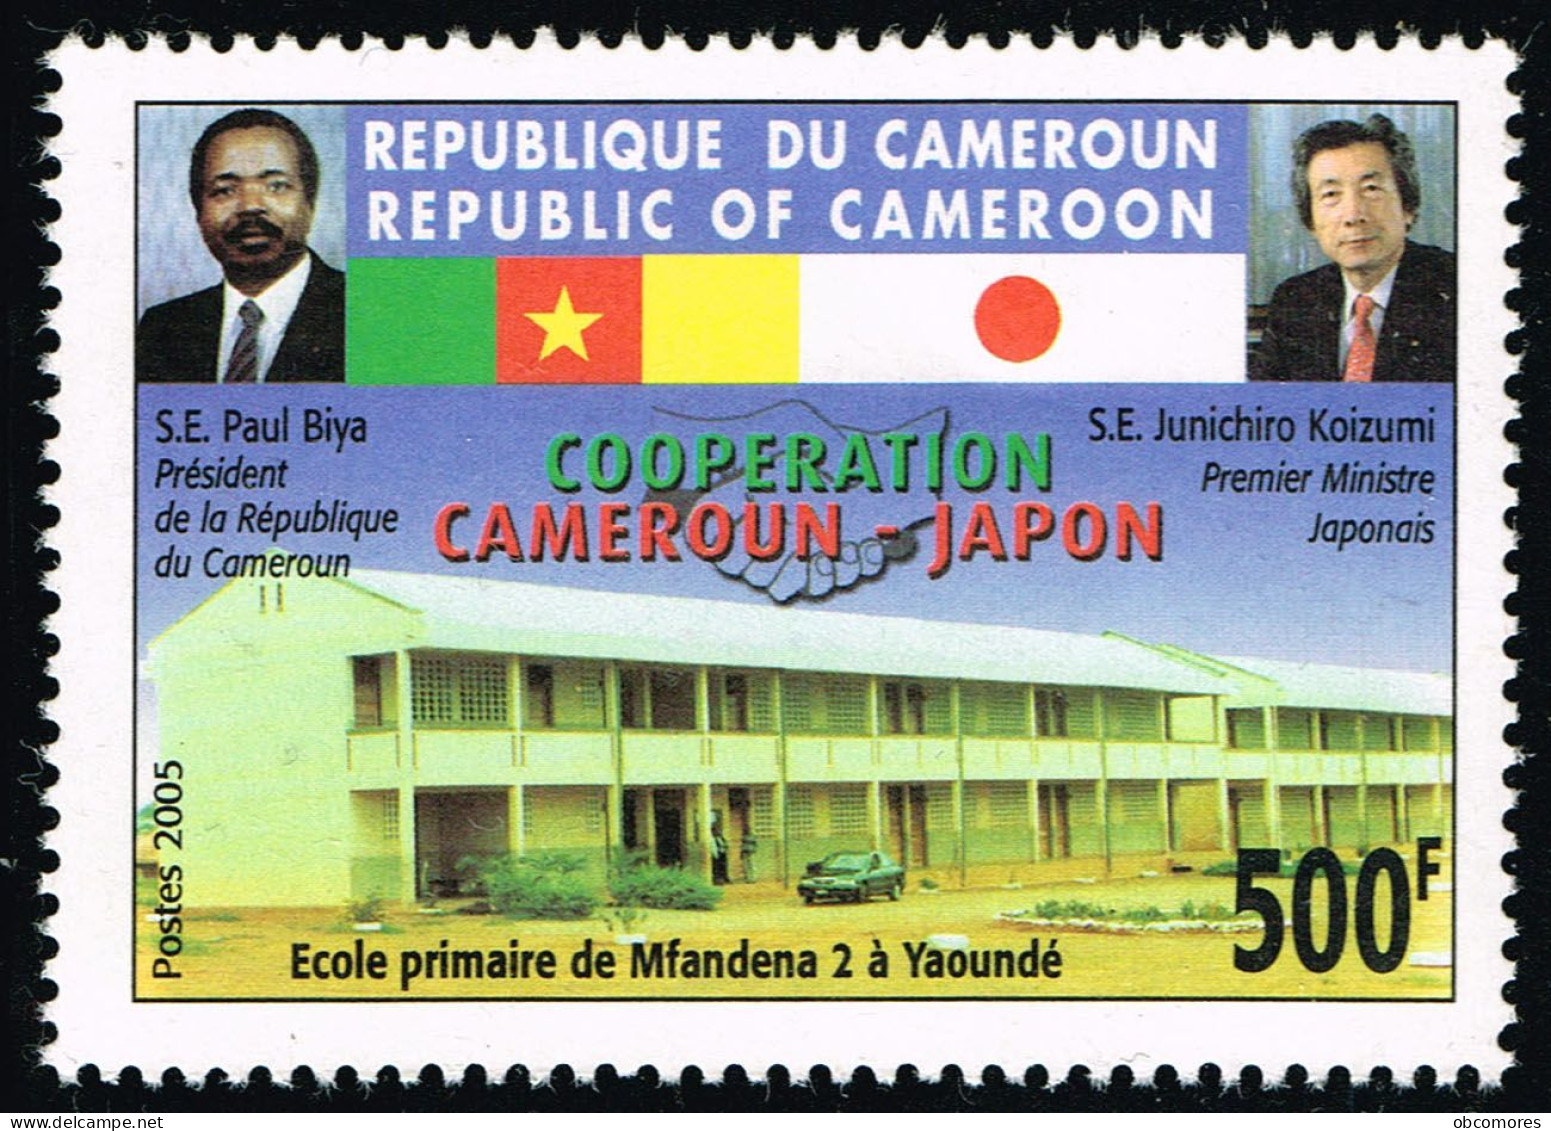 CAMEROUN Cameroon Kamerun 2005 School Japan 500 F POSTES 2005 Mi 1255 II Sc 954a YT 914a - MNH ** - Cameroun (1960-...)